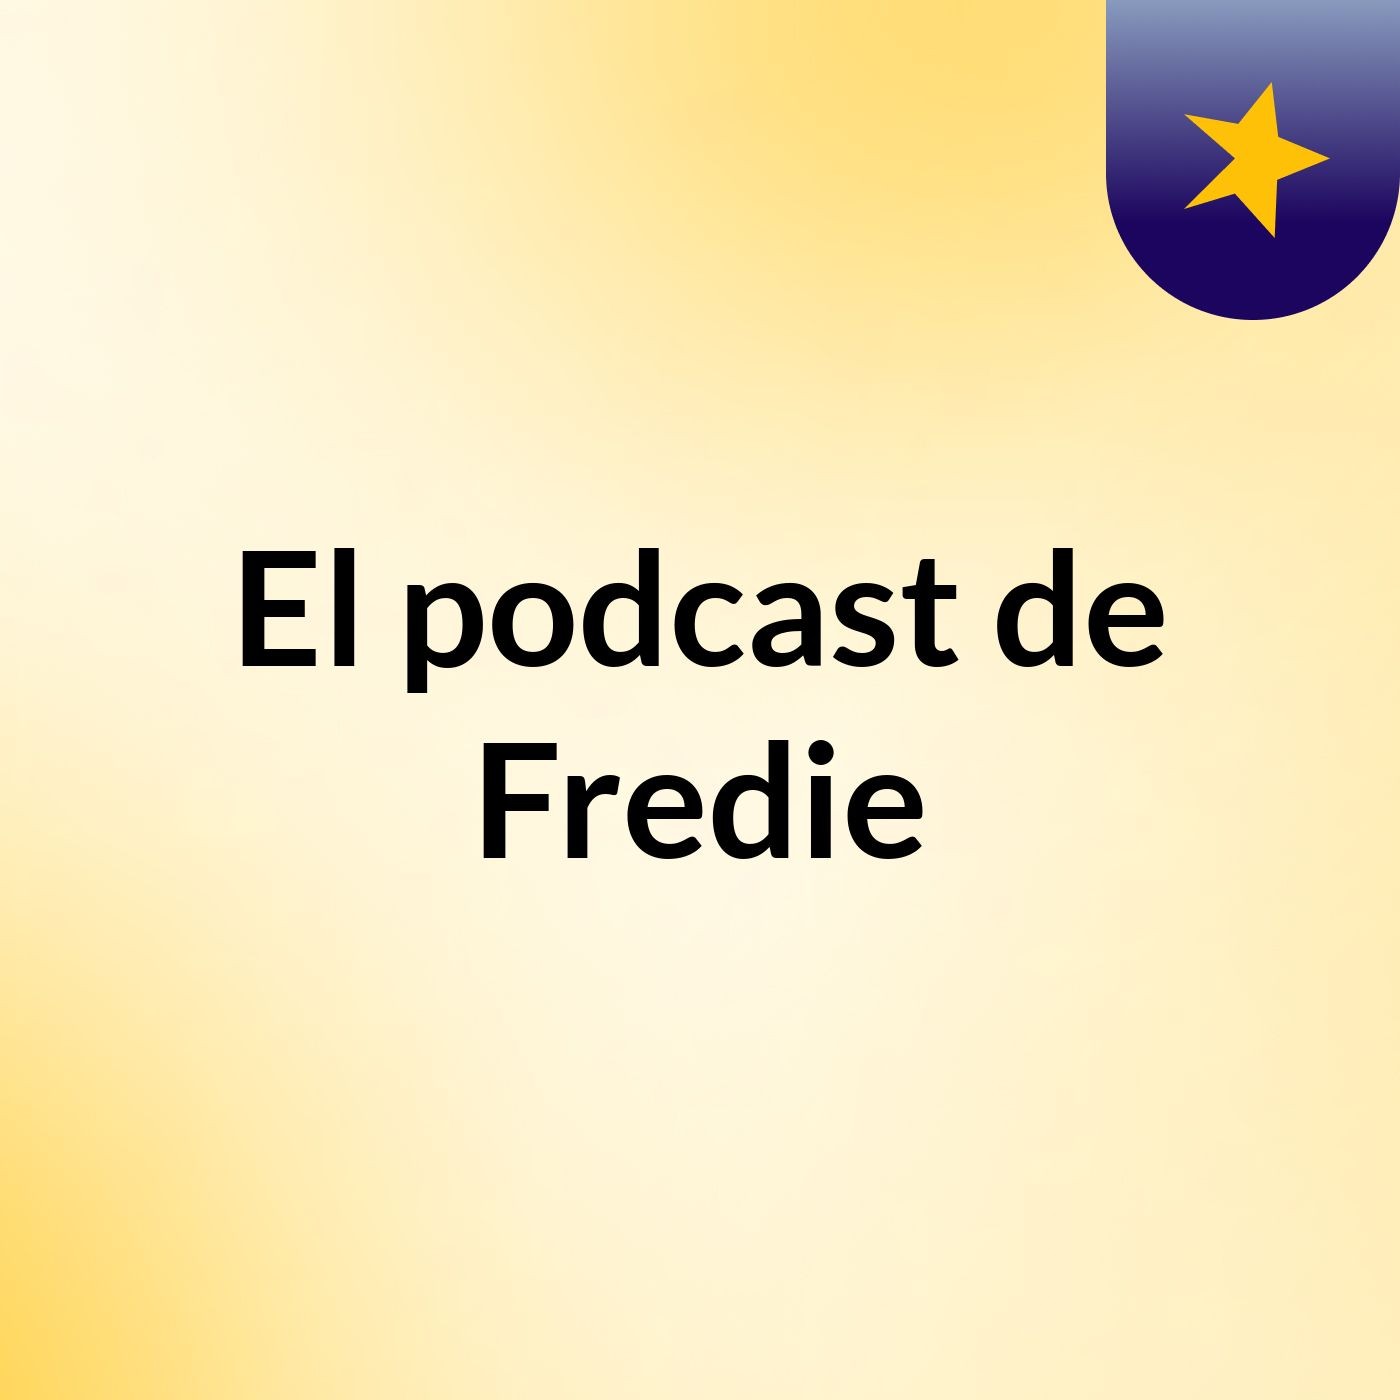 El podcast de Fredie